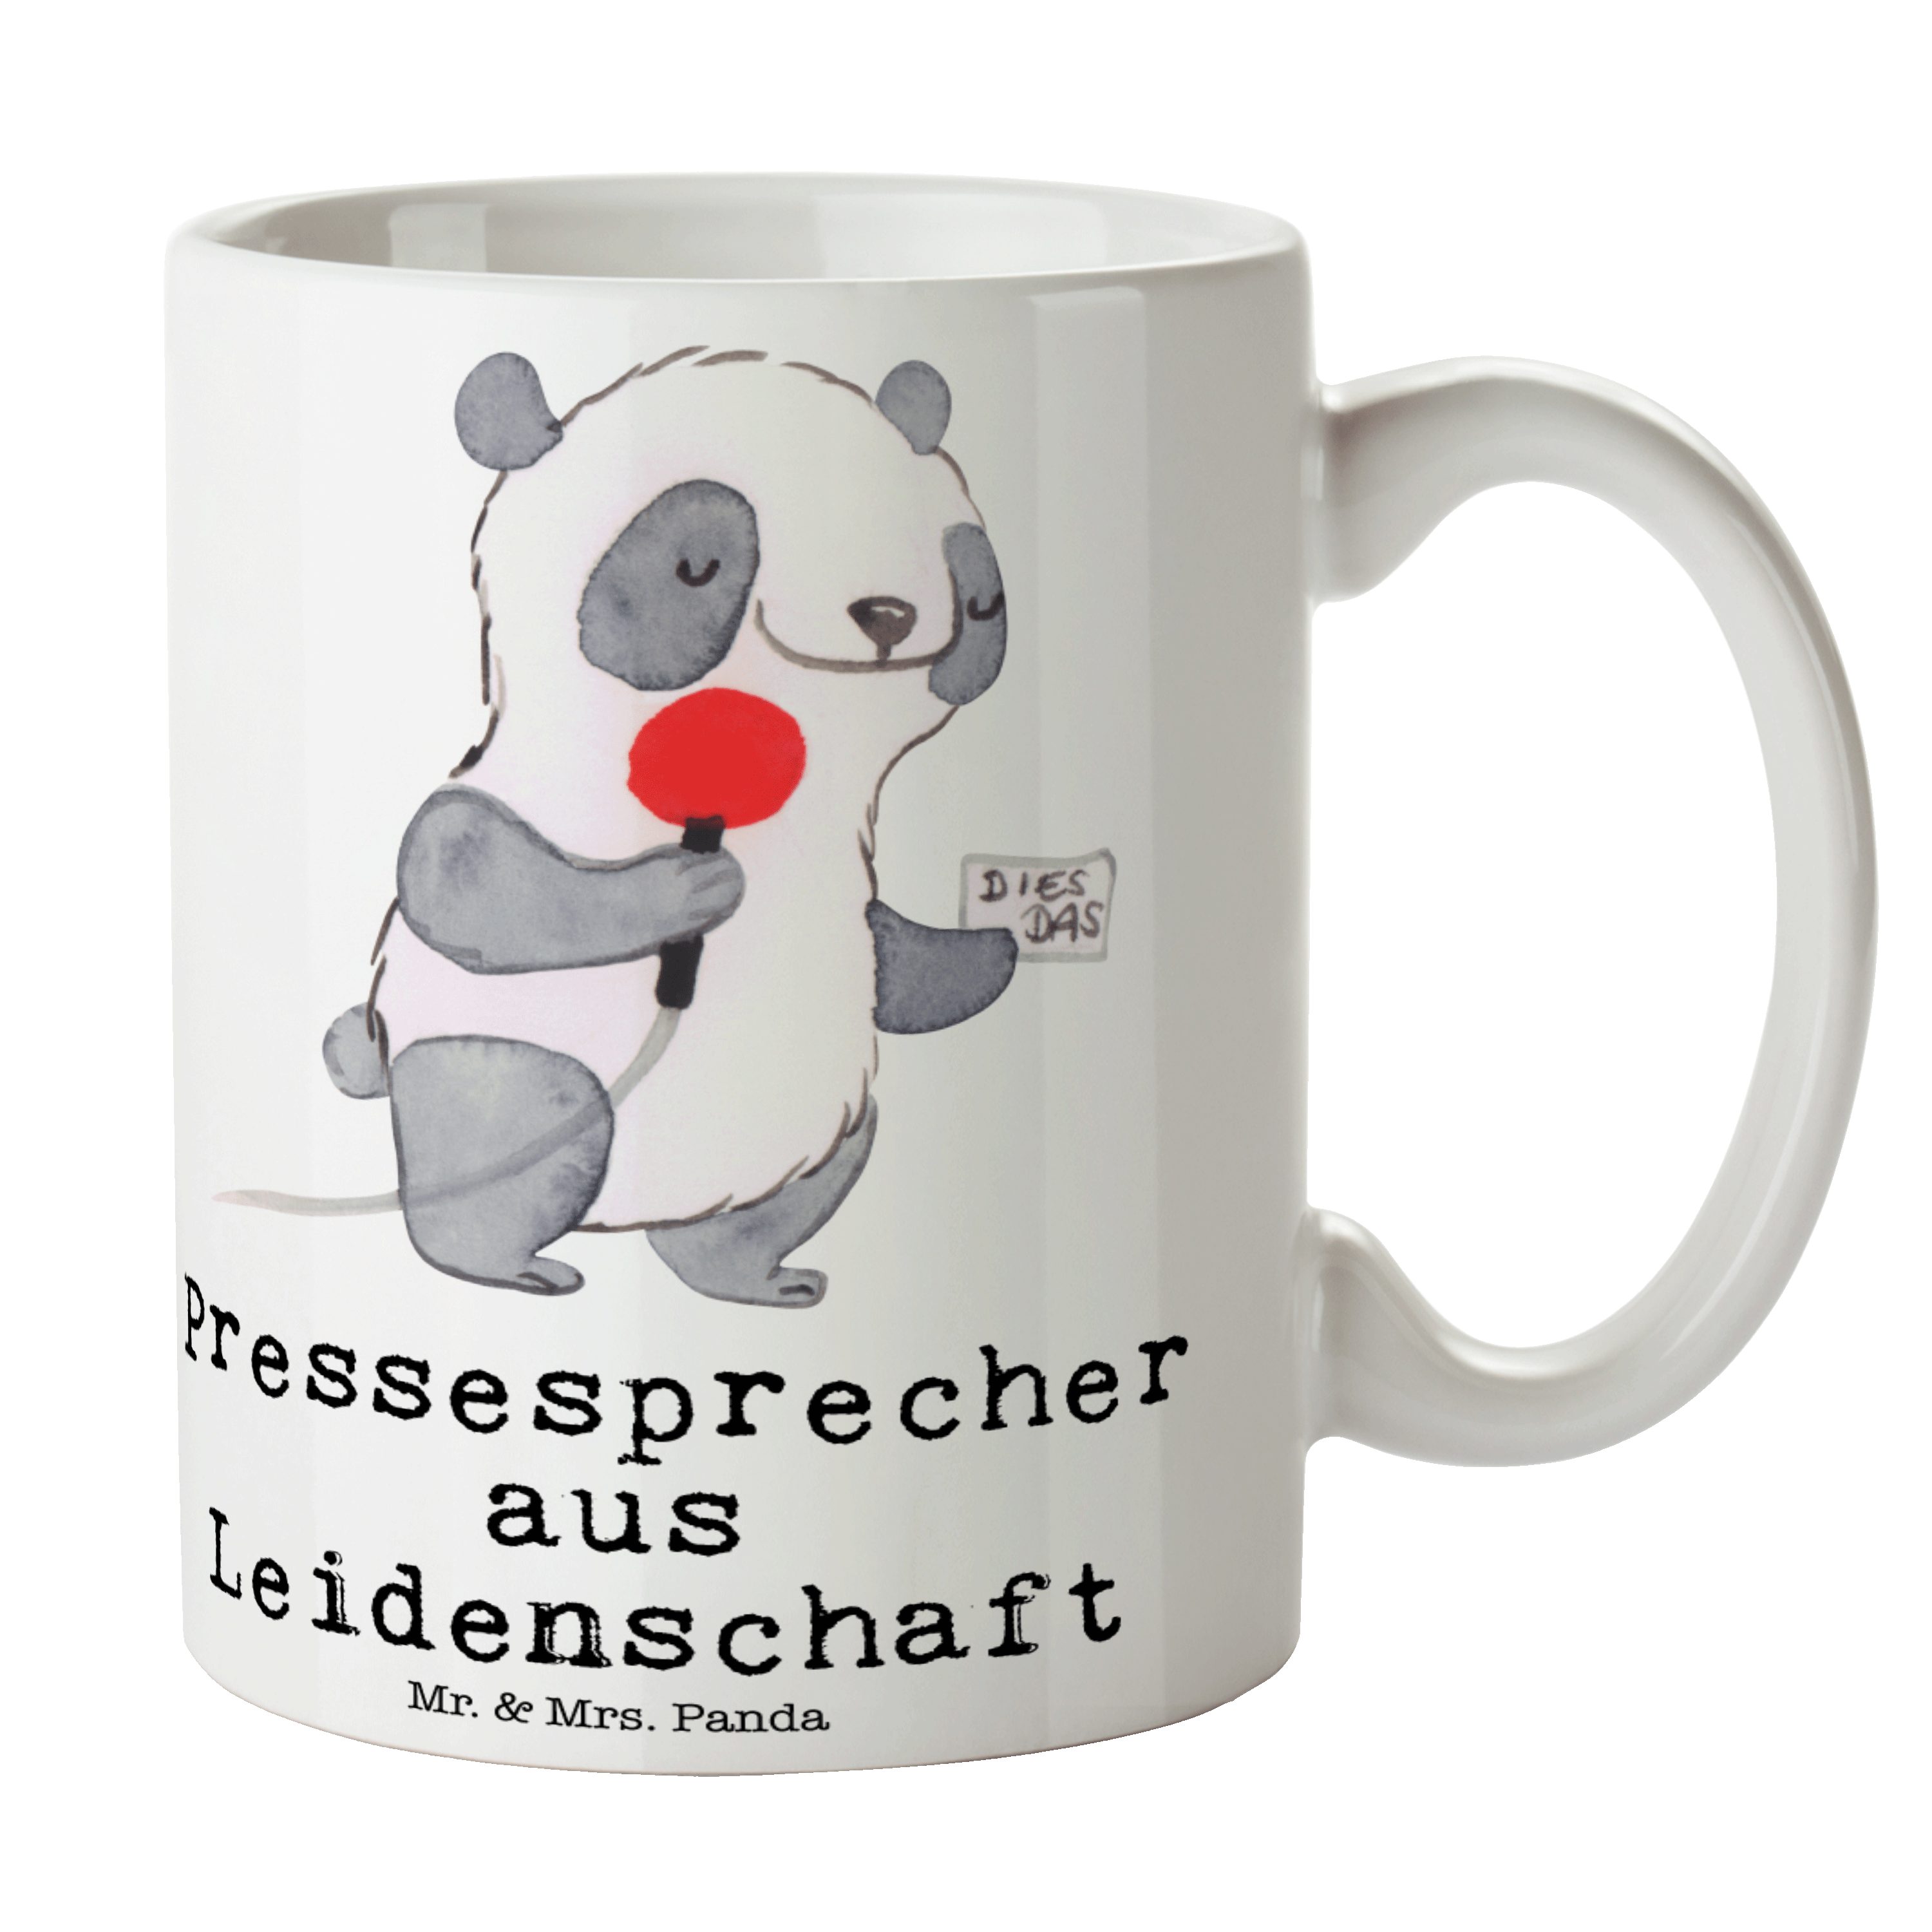 Mr. & Mrs. Panda Tasse Pressesprecher aus Leidenschaft - Weiß - Geschenk, Tasse, Jubiläum, K, Keramik